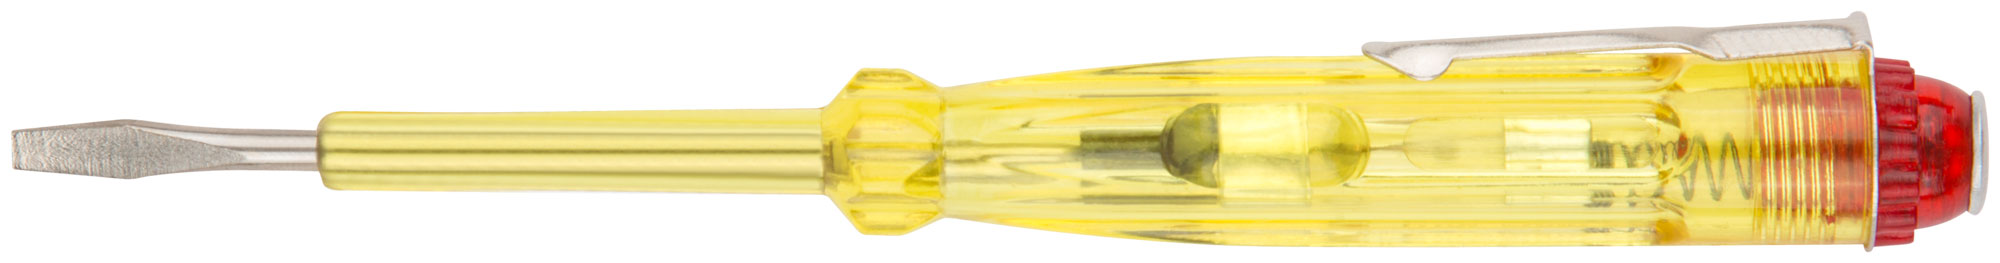 Отвертка индикаторная, желтая ручка 100 - 500 В, 140 мм КУРС 56501 отвертка индикаторная курс 56508